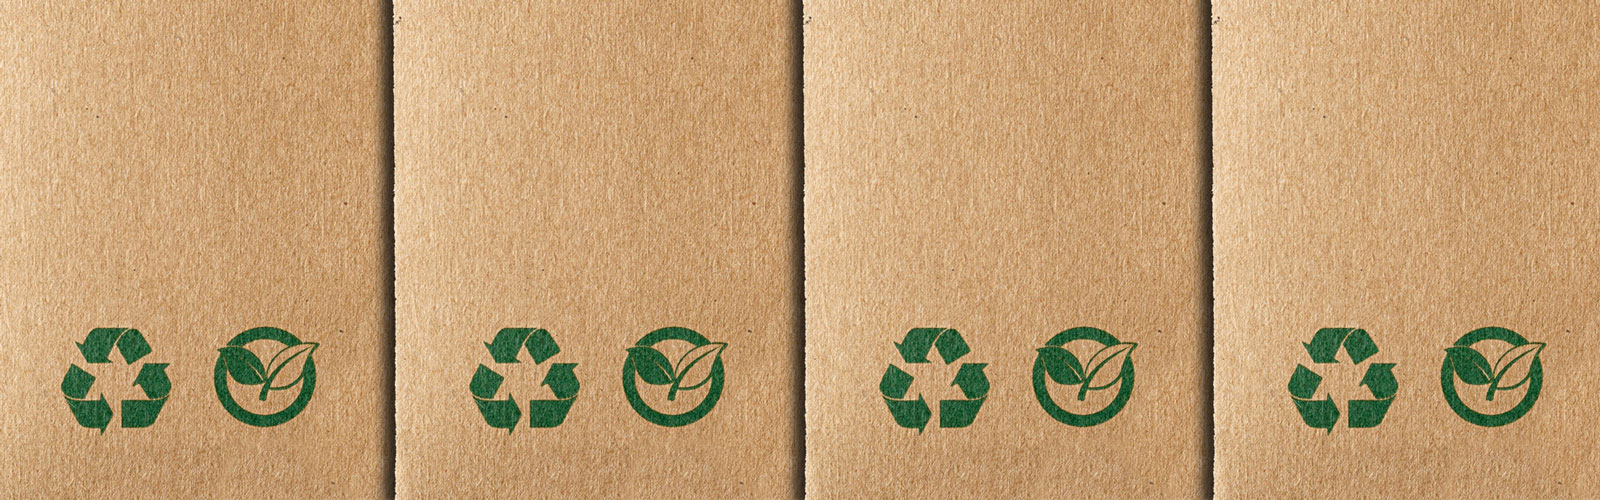 envases sostenibles